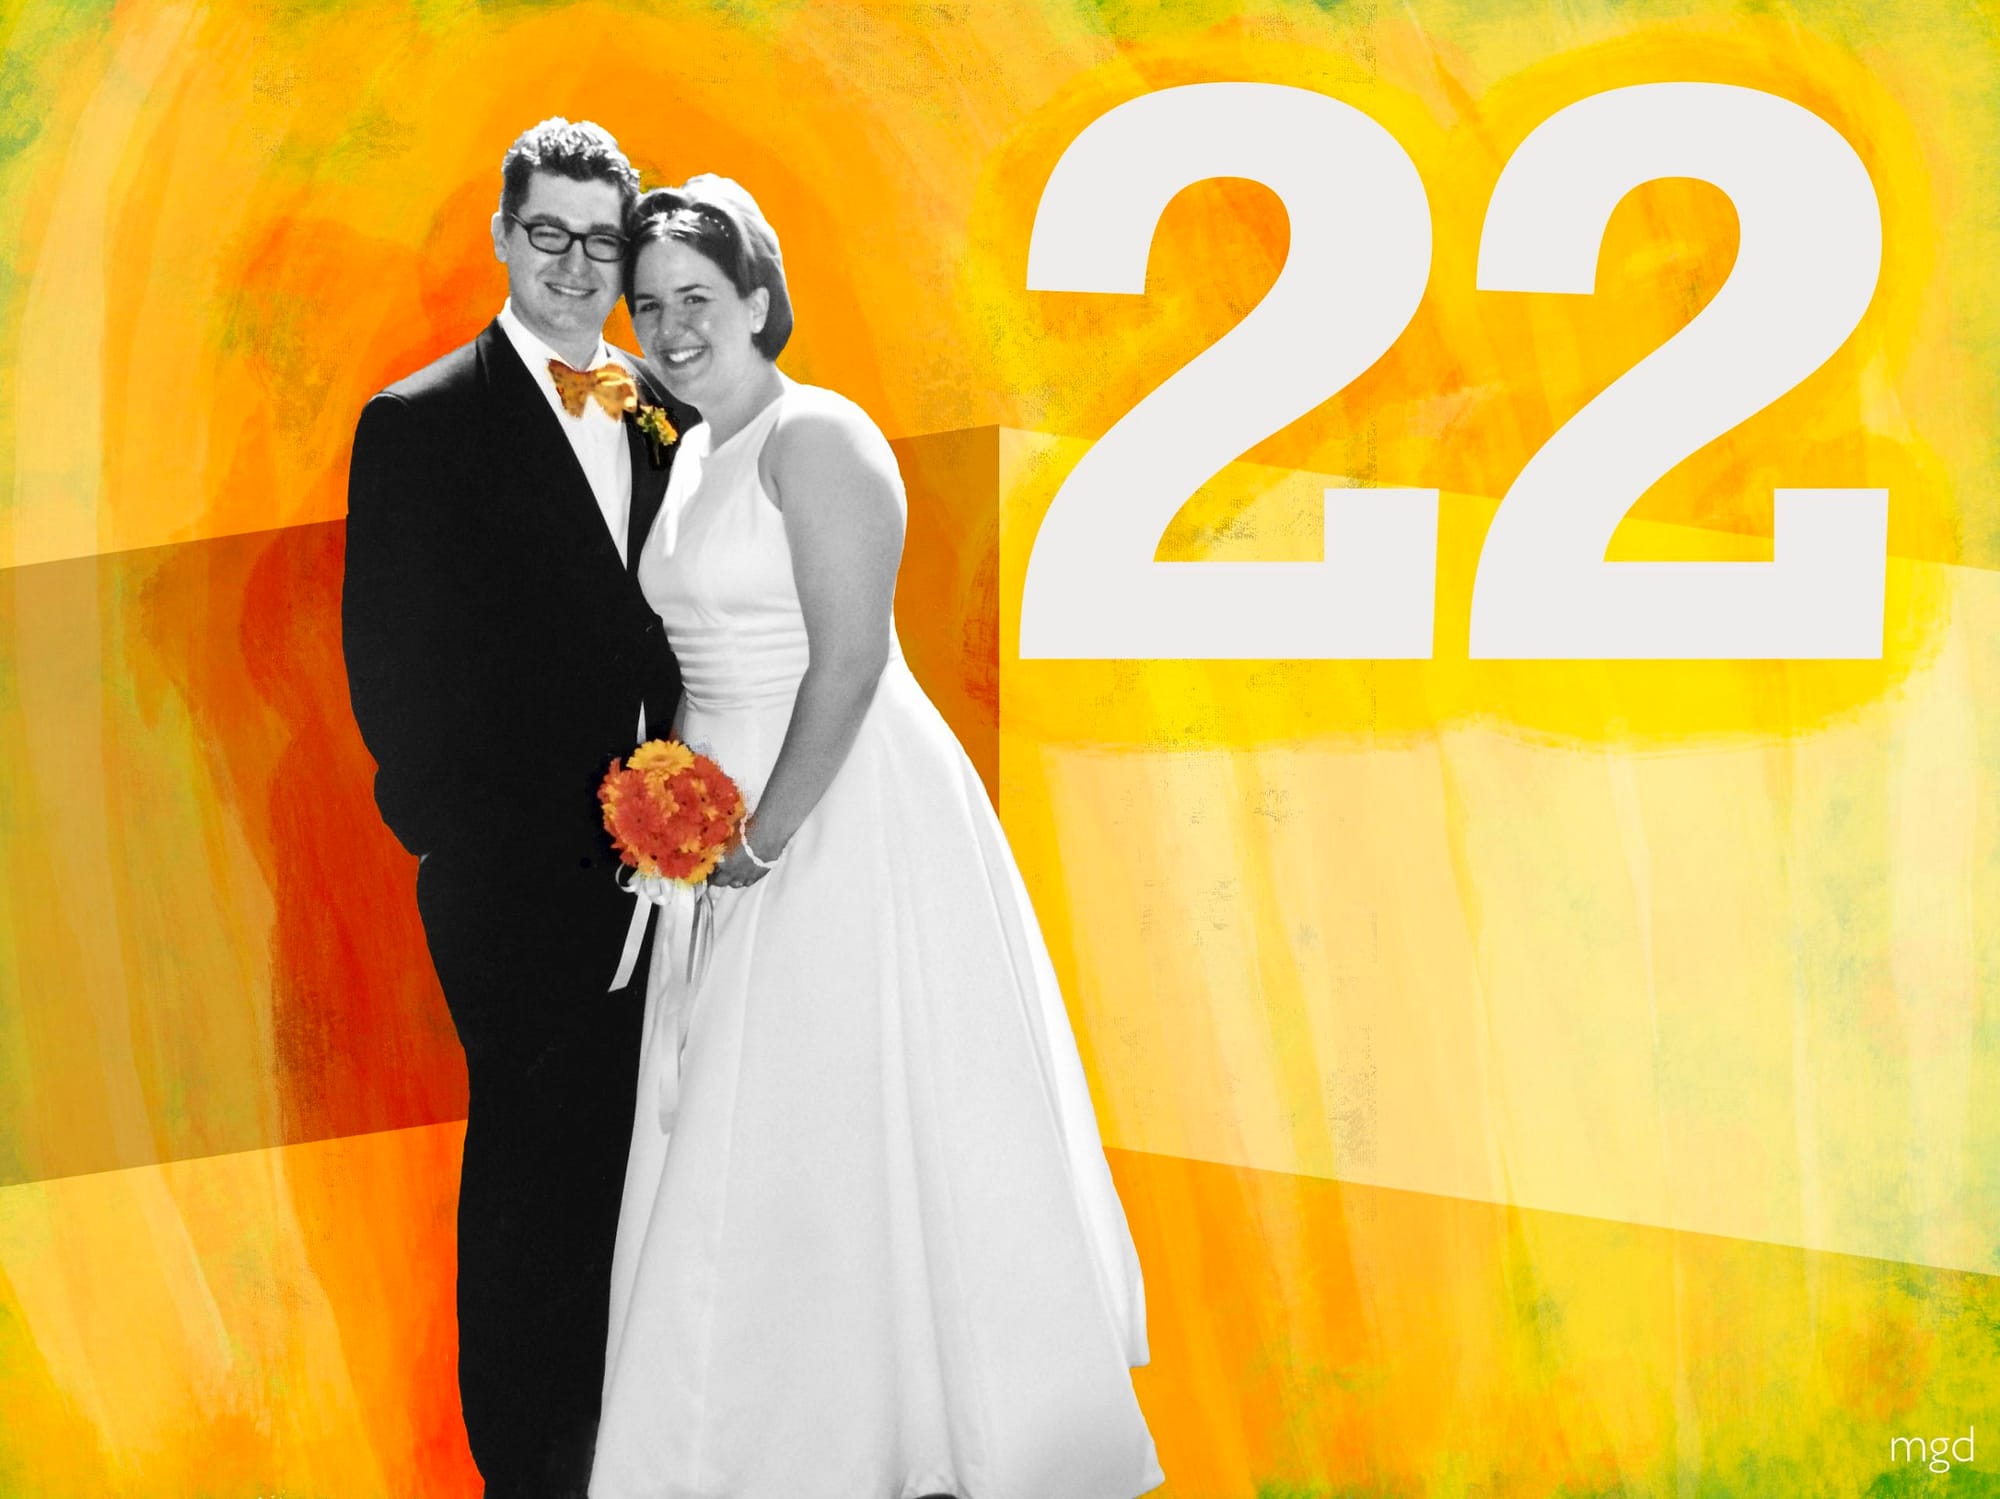 22nd wedding anniversary art